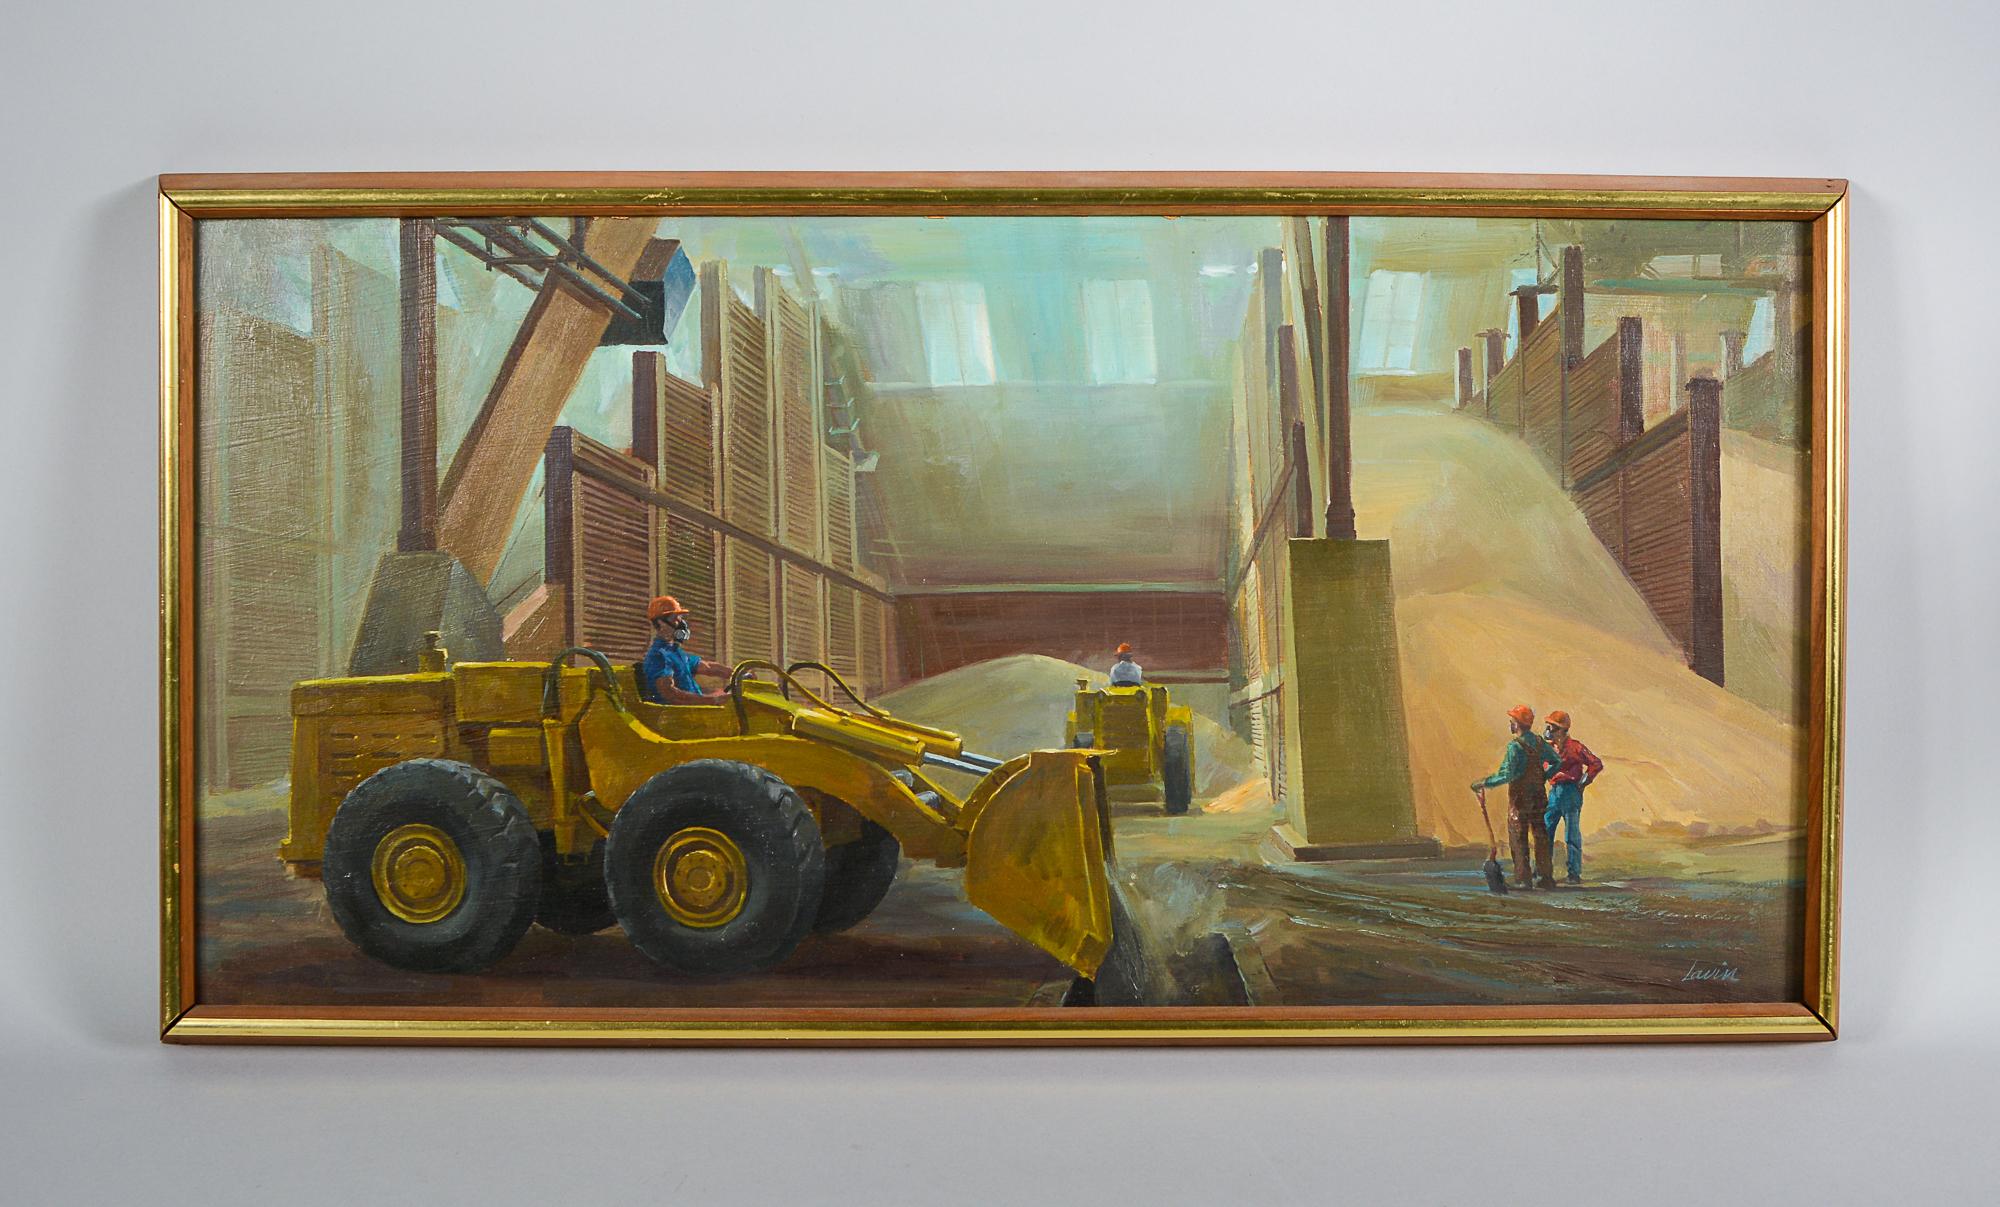 Peinture à l'huile sur masonite de l'intérieur d'un entrepôt de céréales par Robert Lavin.

Robert Lavin (1919-1997) Né à New York, il fréquente la National Academy of Art, où il étudie la peinture. Il a peint dans le style réaliste social américain